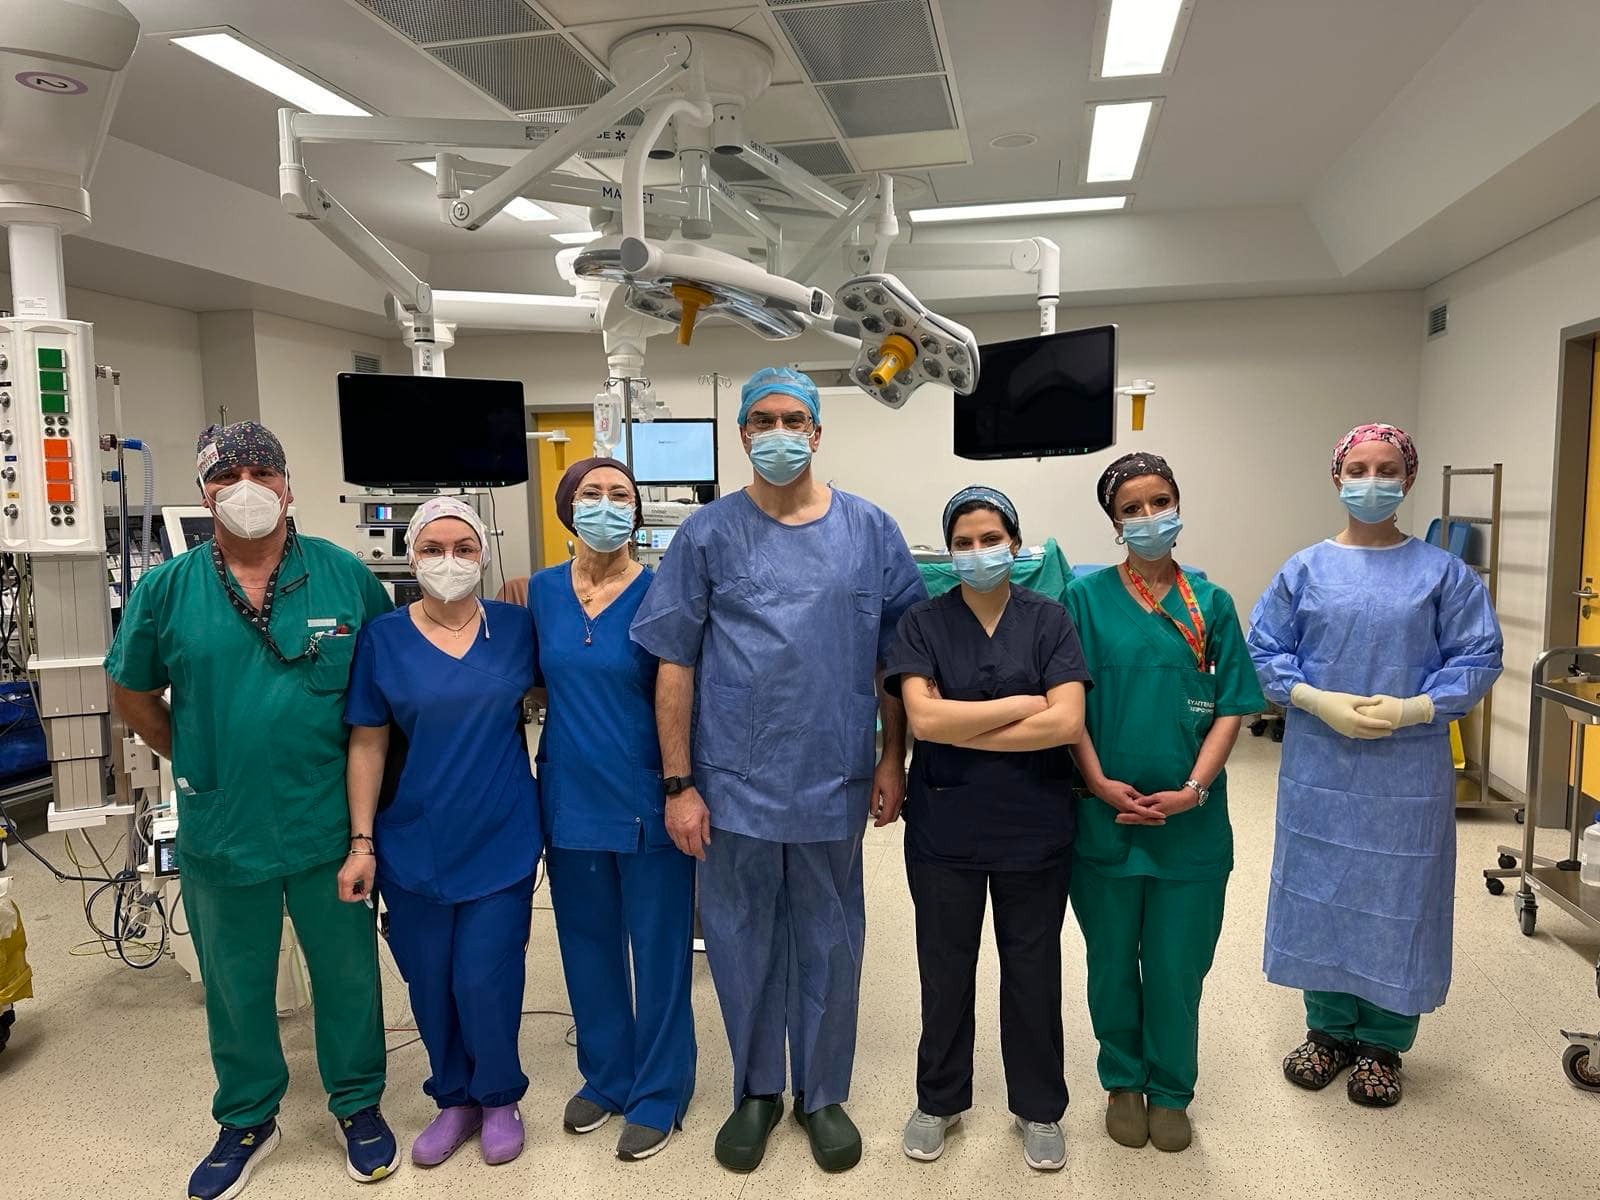 Απογευματινά χειρουργεία: Ο Ευαγγελισμός έκανε την πρεμιέρα για τα νοσοκομεία της Αττικής – «Ιστορική στιγμή»